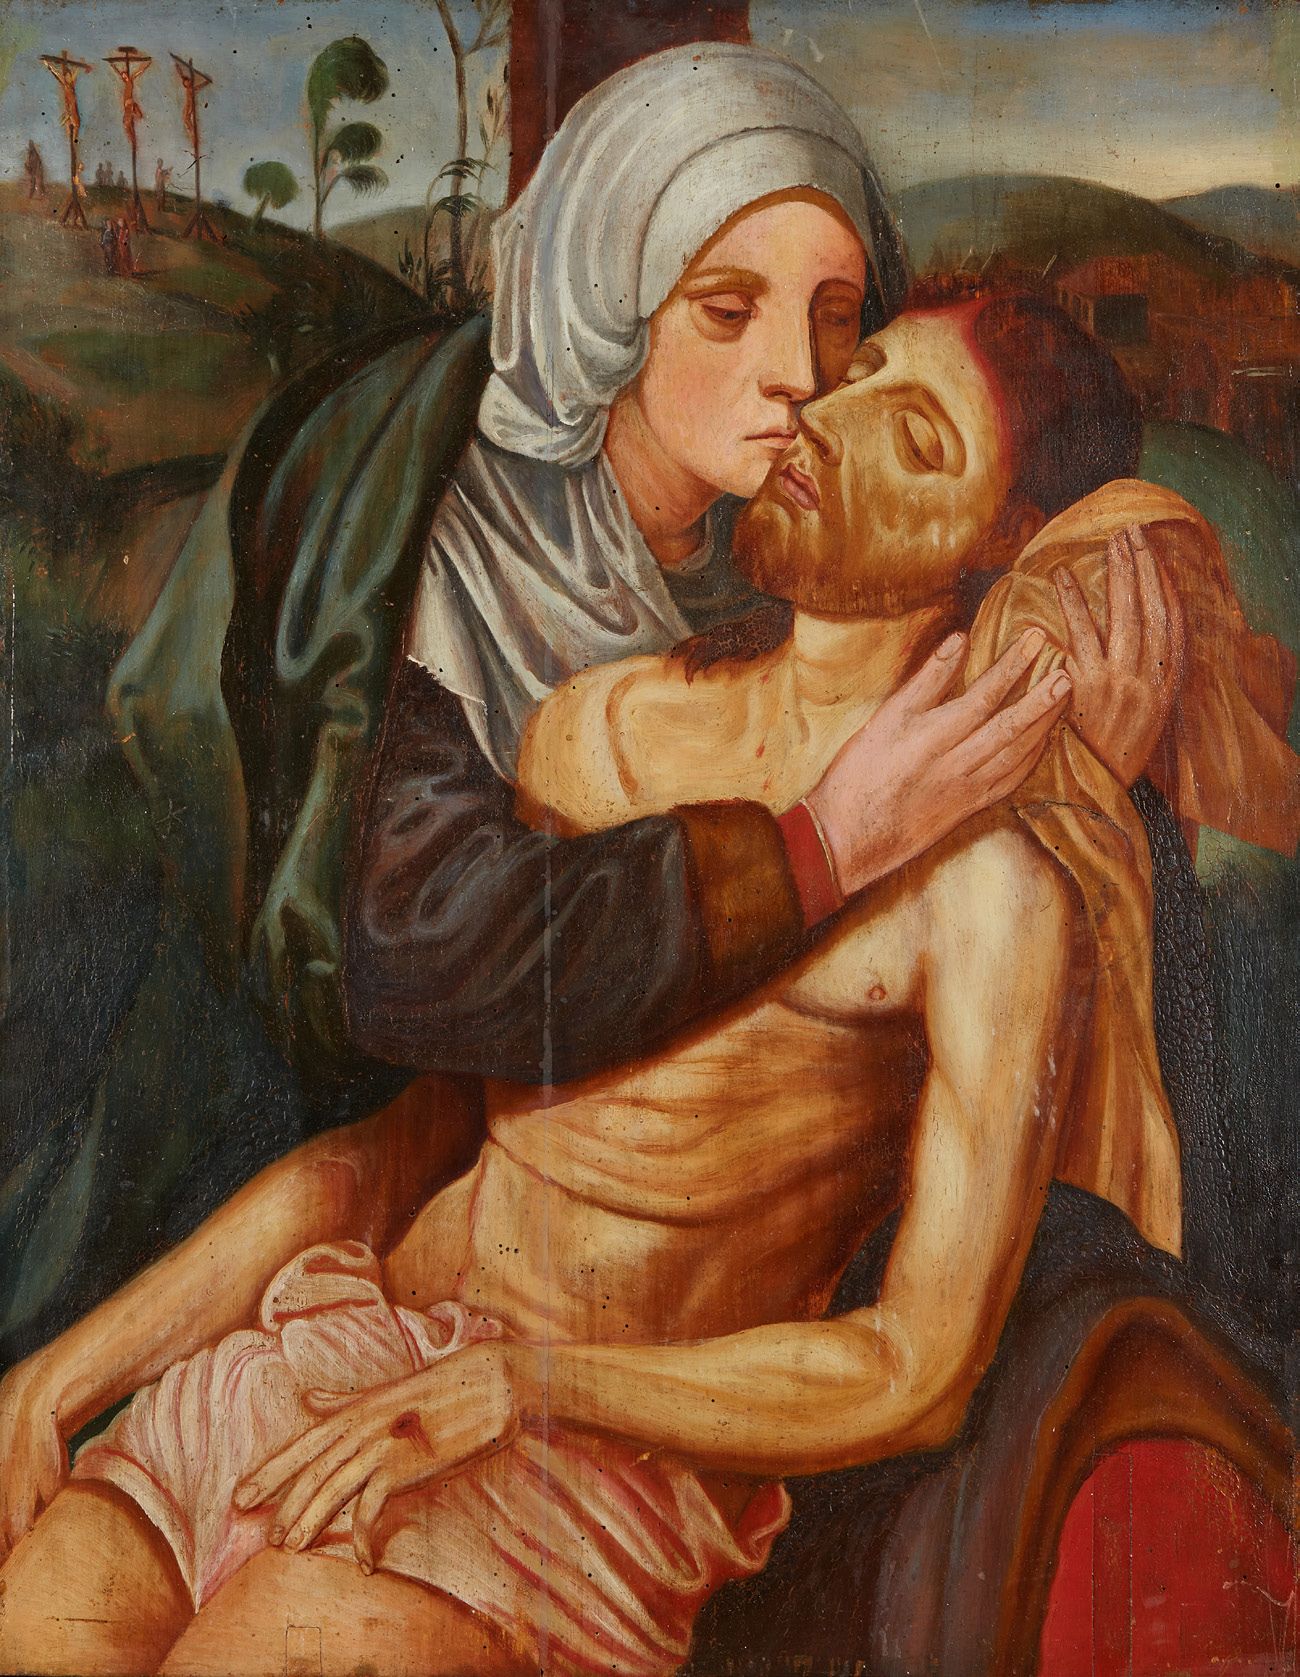 École du XIXe siècle 基督与玛利亚
油彩画 60.5 x 47.5 cm